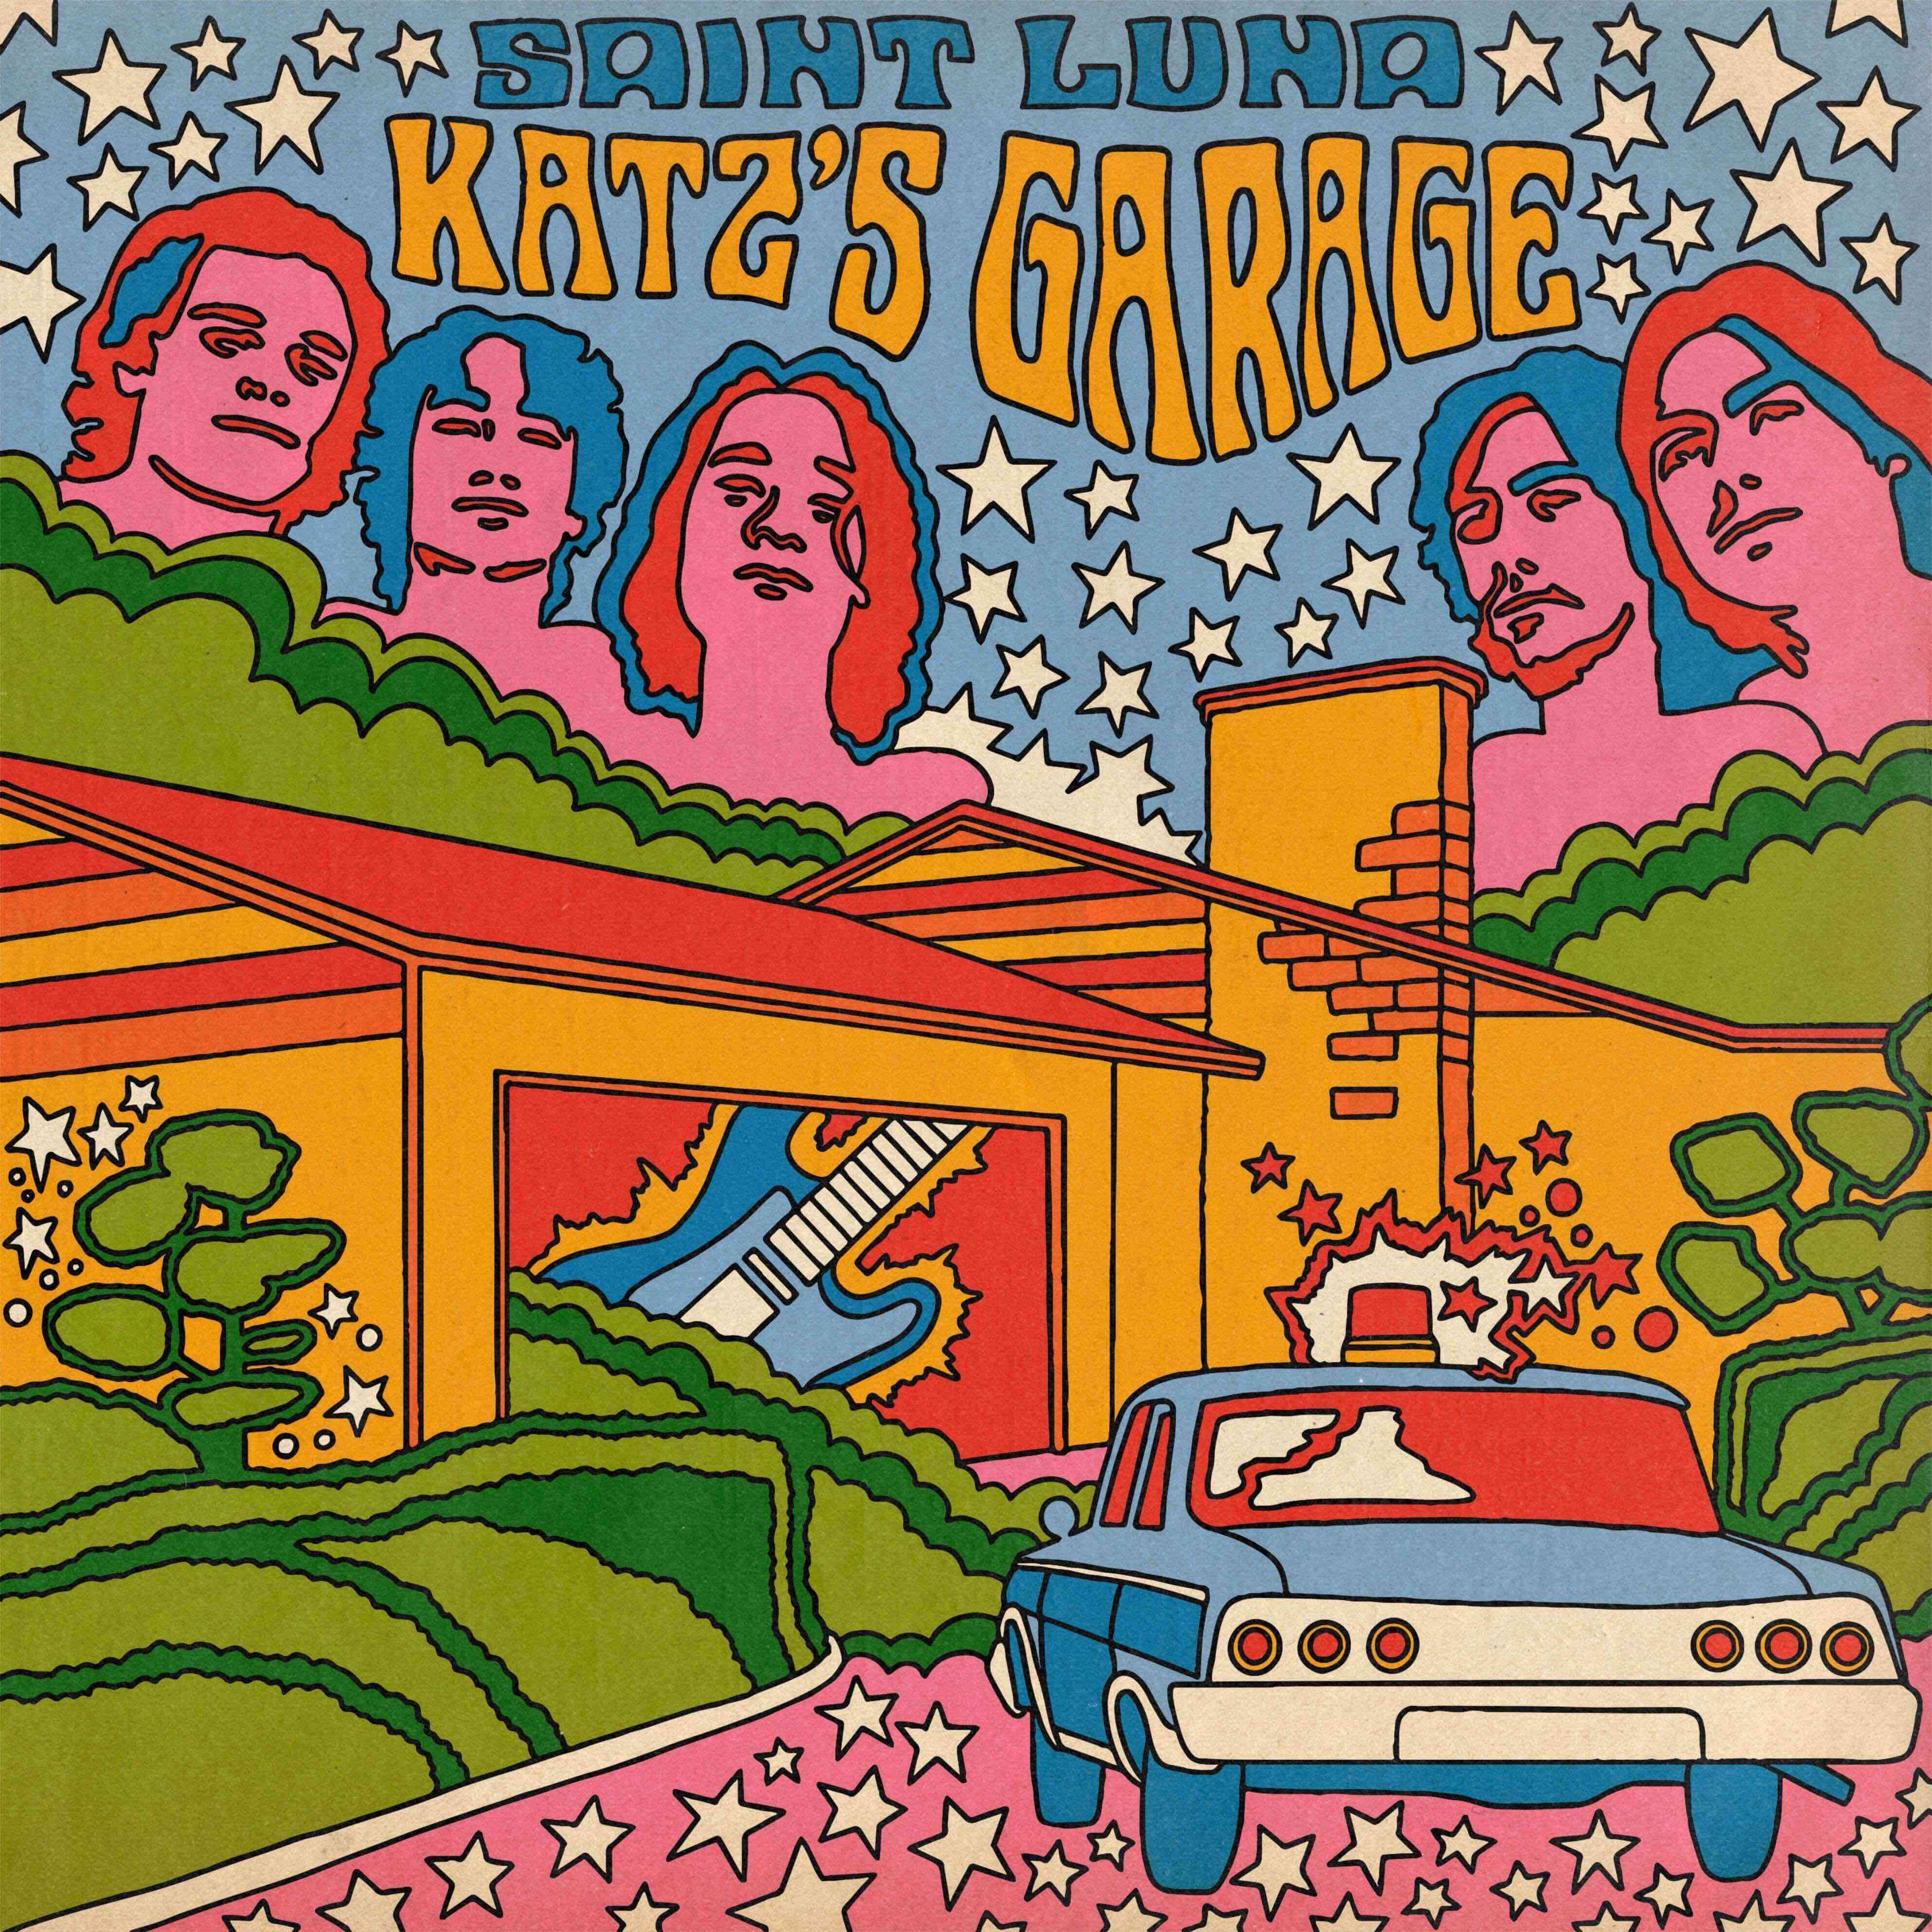 Katz's Garage Album Art